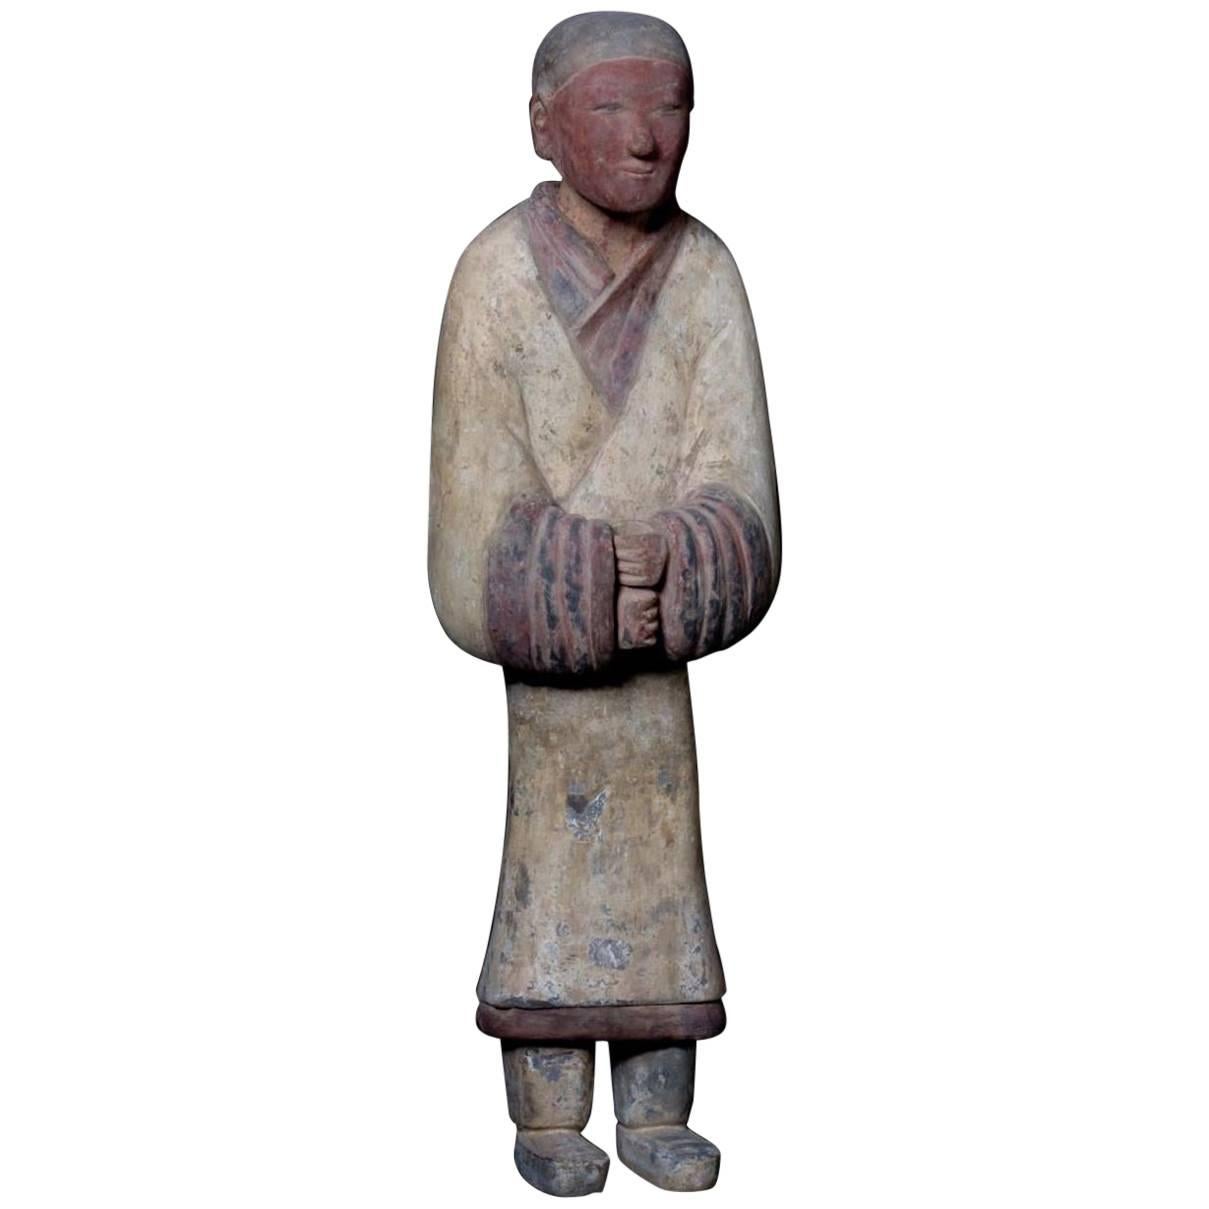 Elegance du guerrier en terre cuite de la dynastie Han - Chine "206 BC - 220 ADS".